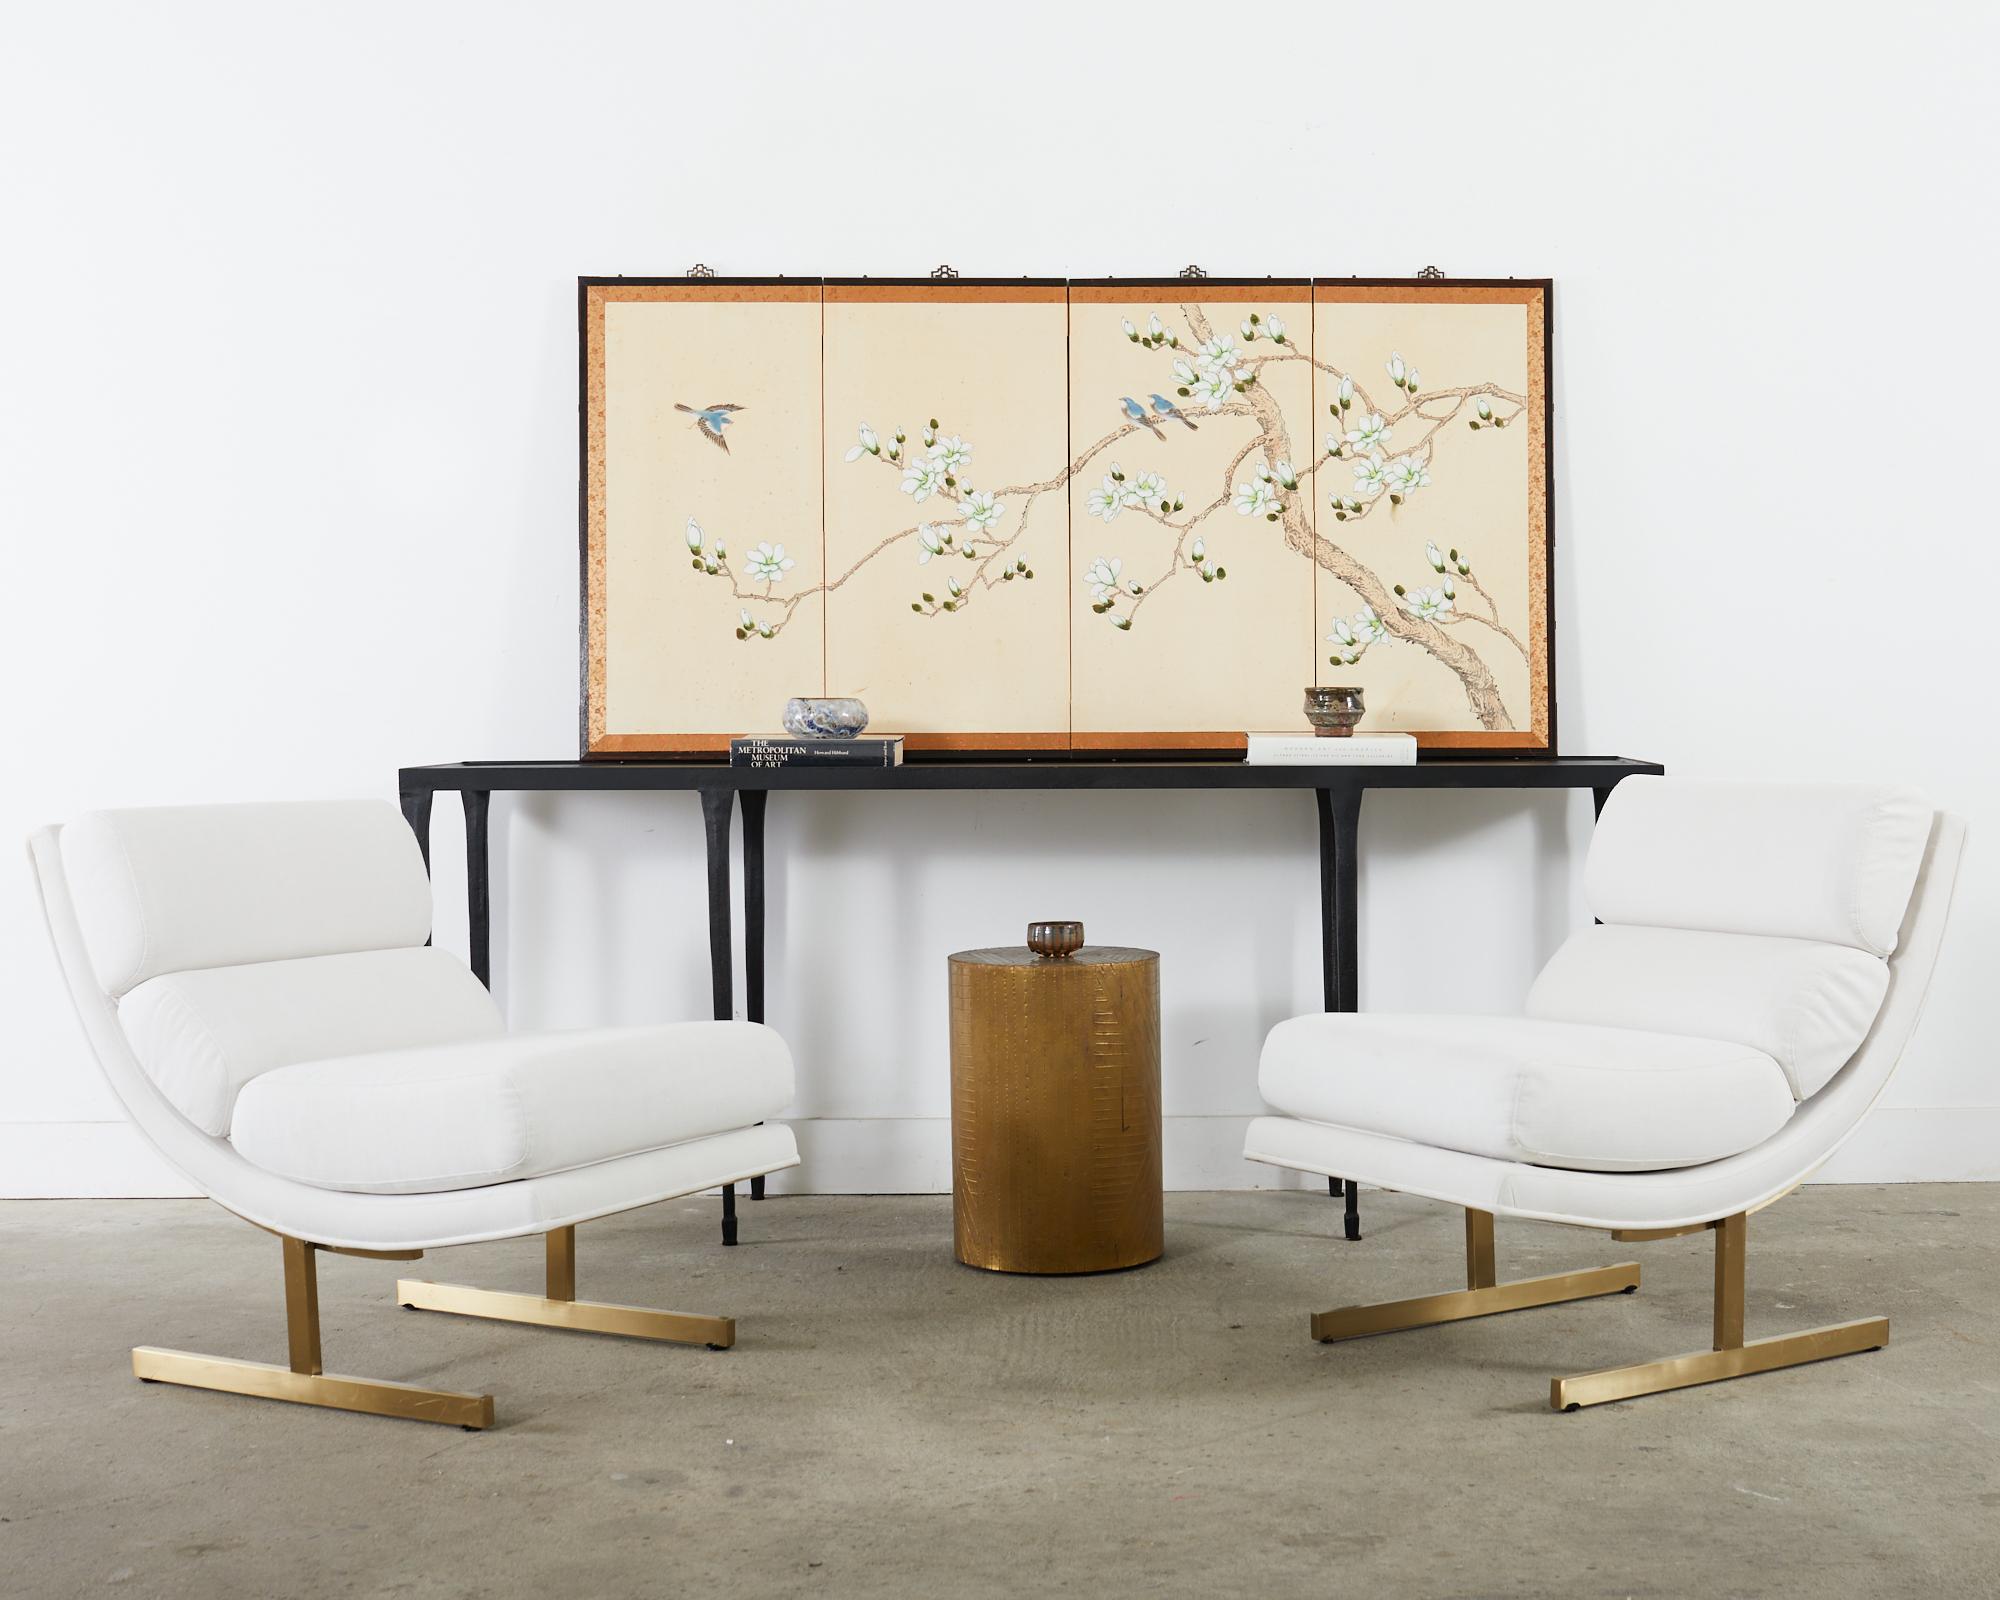 Paravent byobu à quatre panneaux de style japonais du 20e siècle, d'époque Showa, représentant un magnolia en fleurs au printemps avec des oiseaux bleus. Encre vibrante et pigments de couleur naturelle peints sur des planches recouvertes de soie.